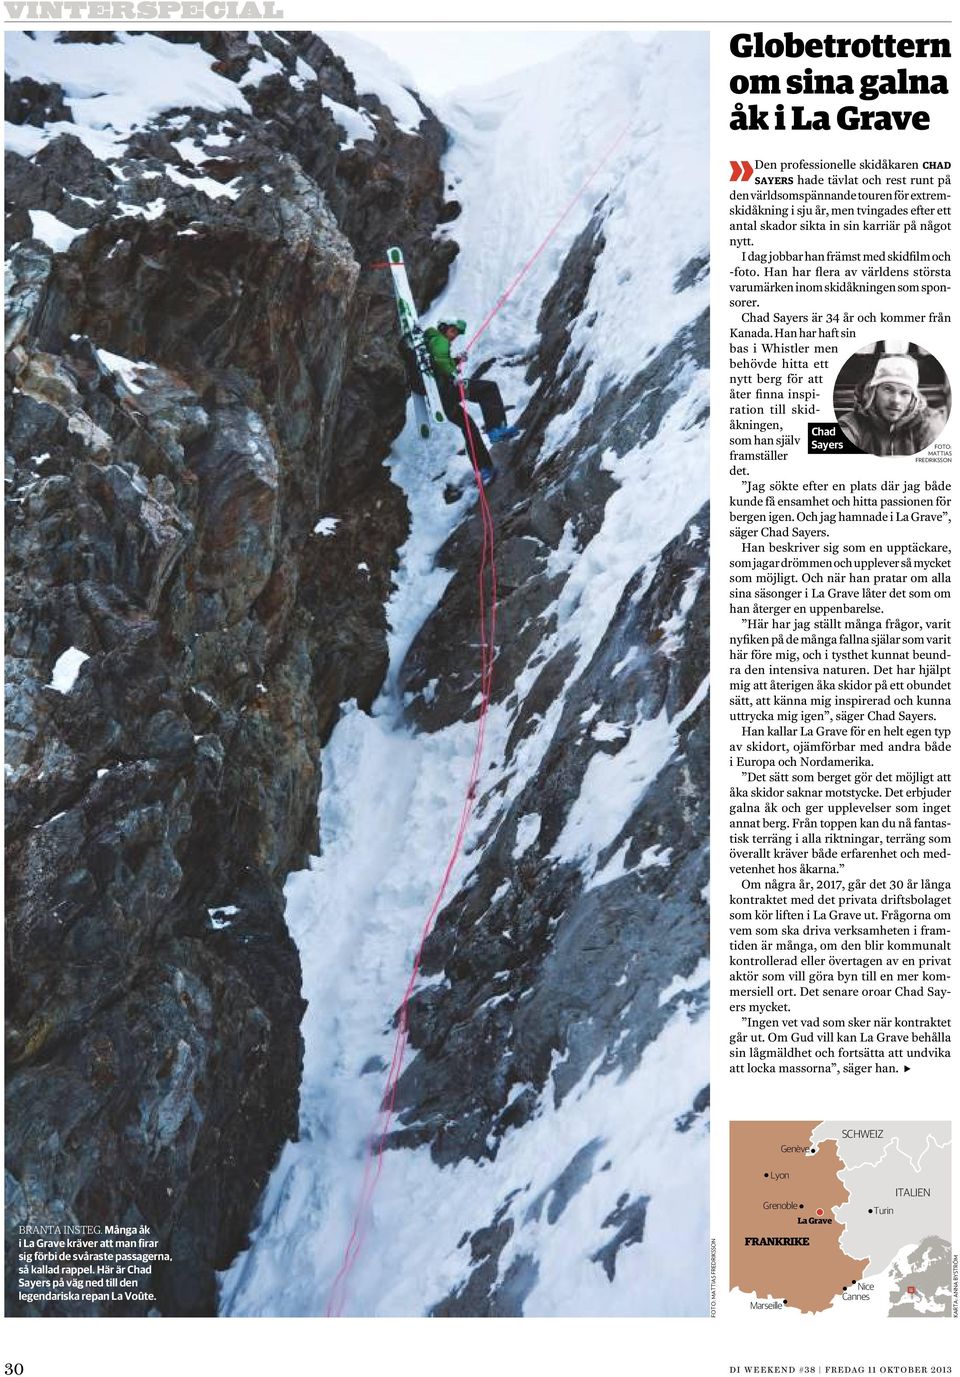 Chad Sayers är 34 år och kommer från Kanada. Han har haft sin bas i Whistler men behövde hitta ett nytt berg för att åter finna inspiration till skidåkningen, som han själv framställer det.